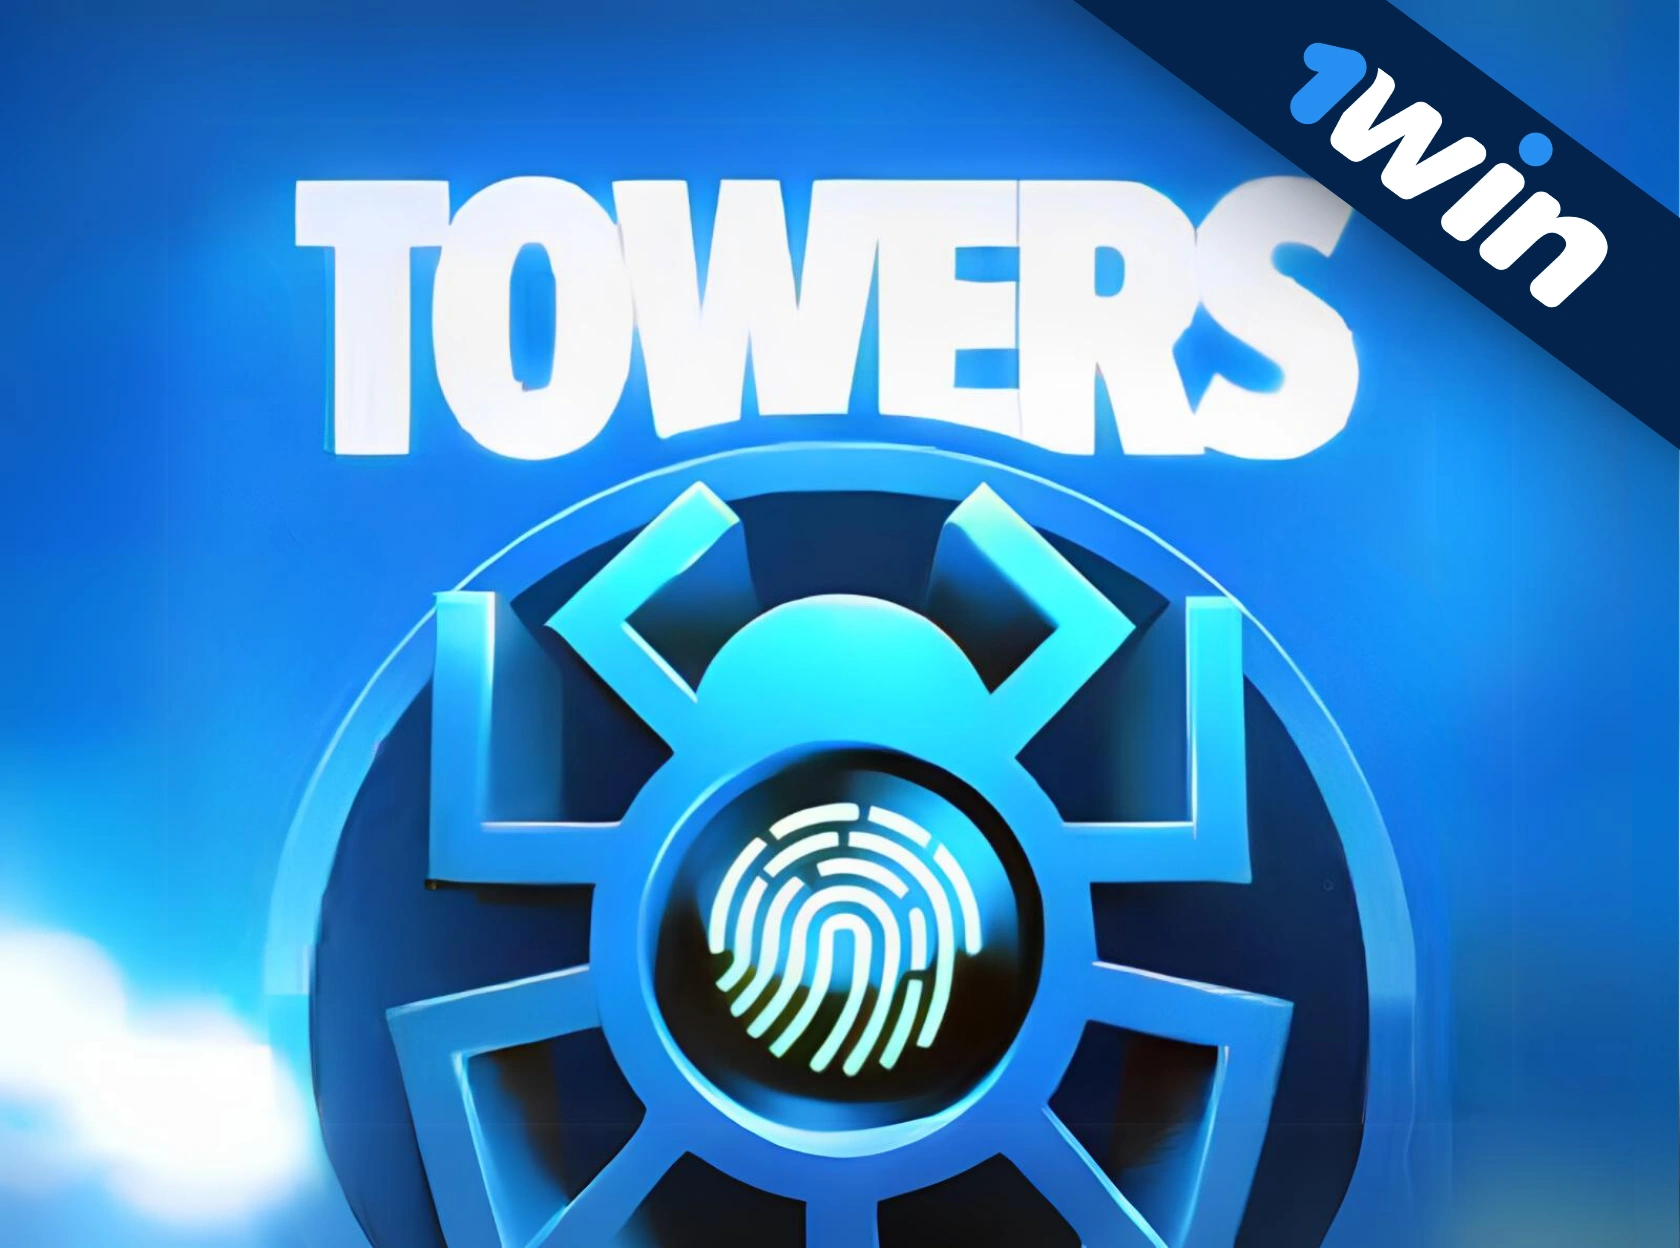 Towers 1win - yeni eksklüziv oyun!